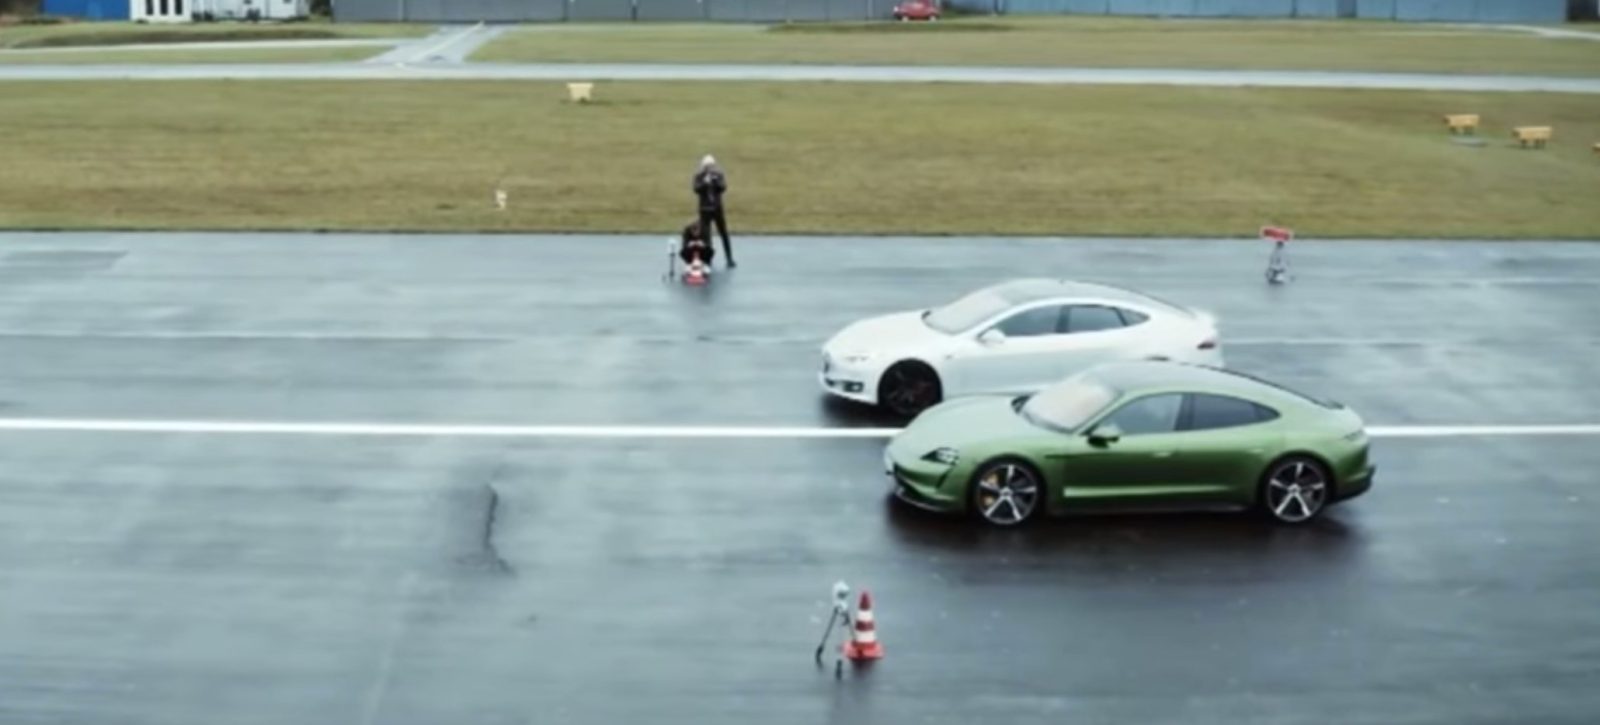 Porsche Taycan Beats Tesla Model S In Drag Race And Handling